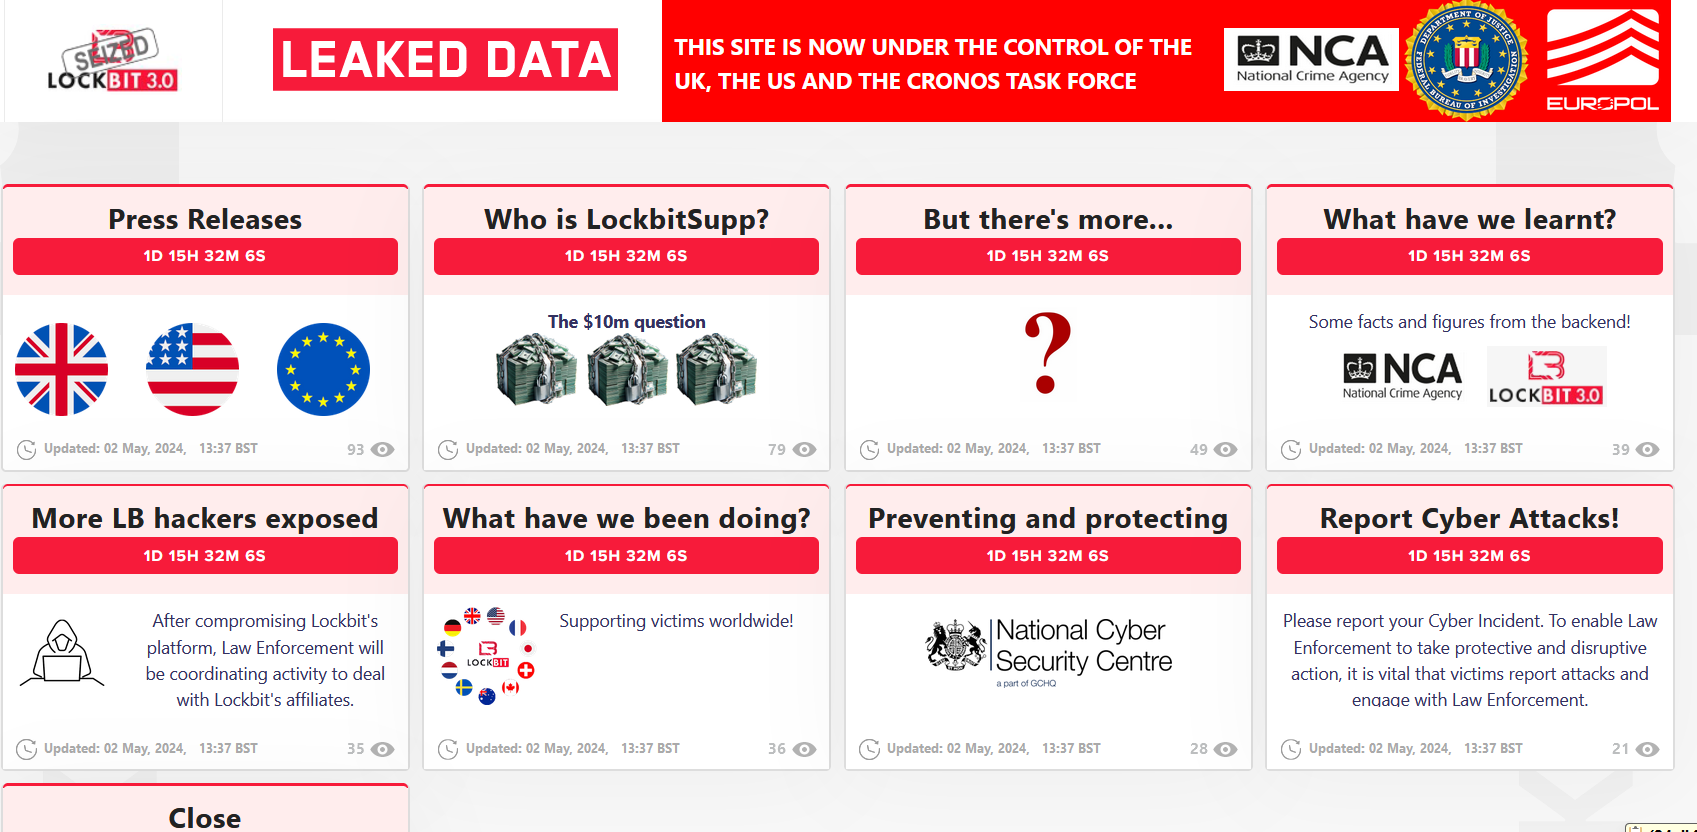 Law enforcement seized Lockbit group's website again